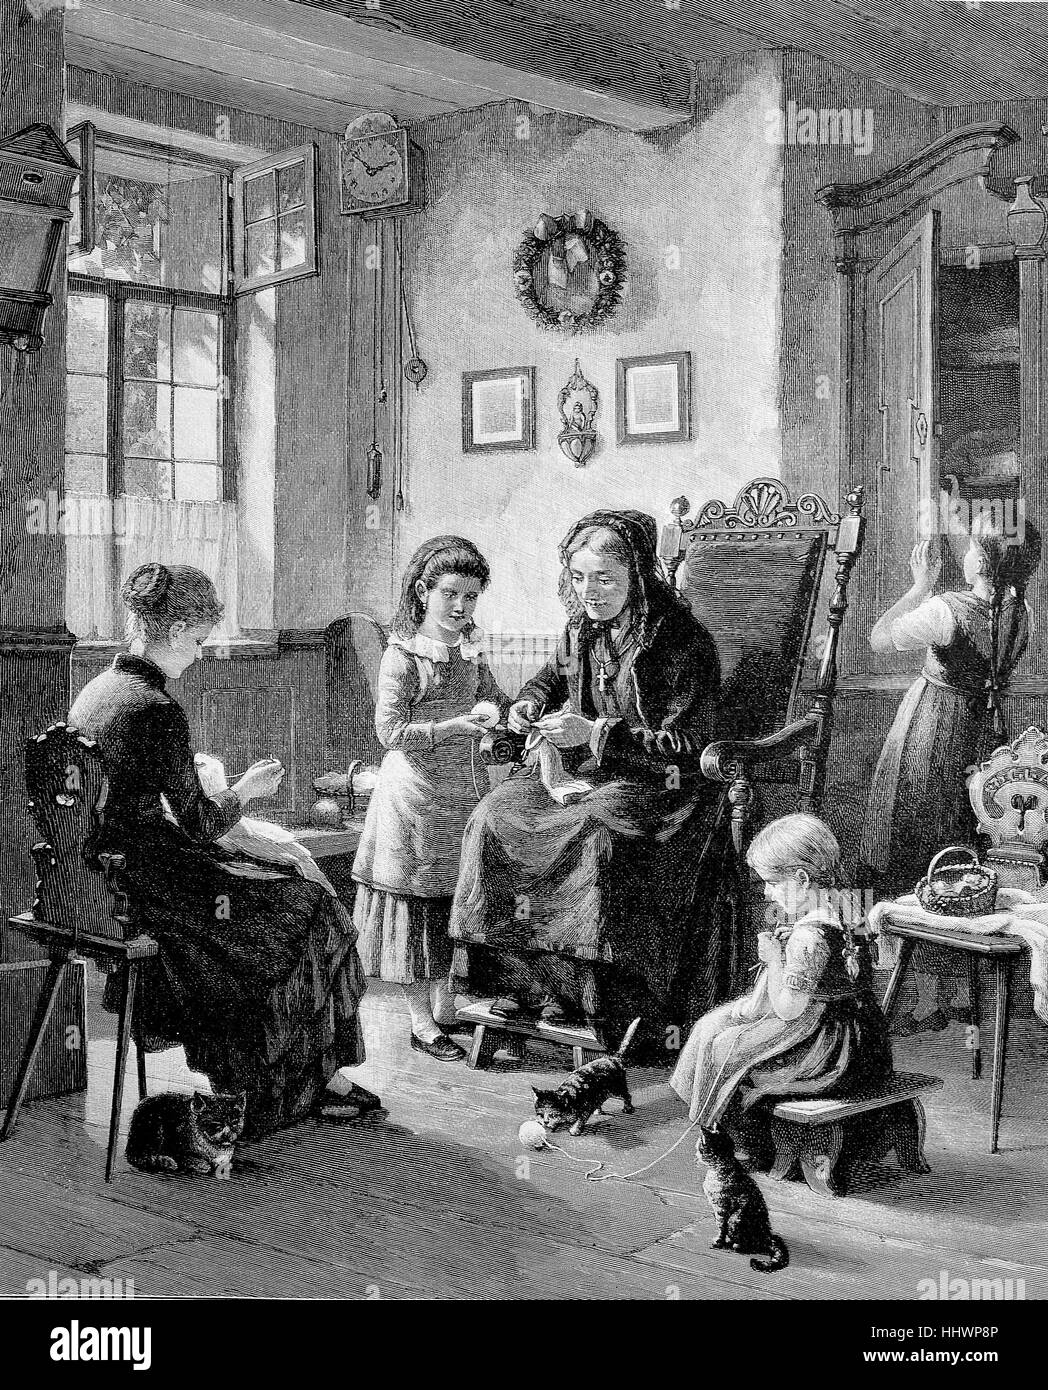 Stricken Schule, lehrt Lehrer jungen Mädchen stricken, nach einem Gemälde von H. Werner, Deutschland, historisches Bild oder Illustration, veröffentlicht 1890, digital verbessert Stockfoto